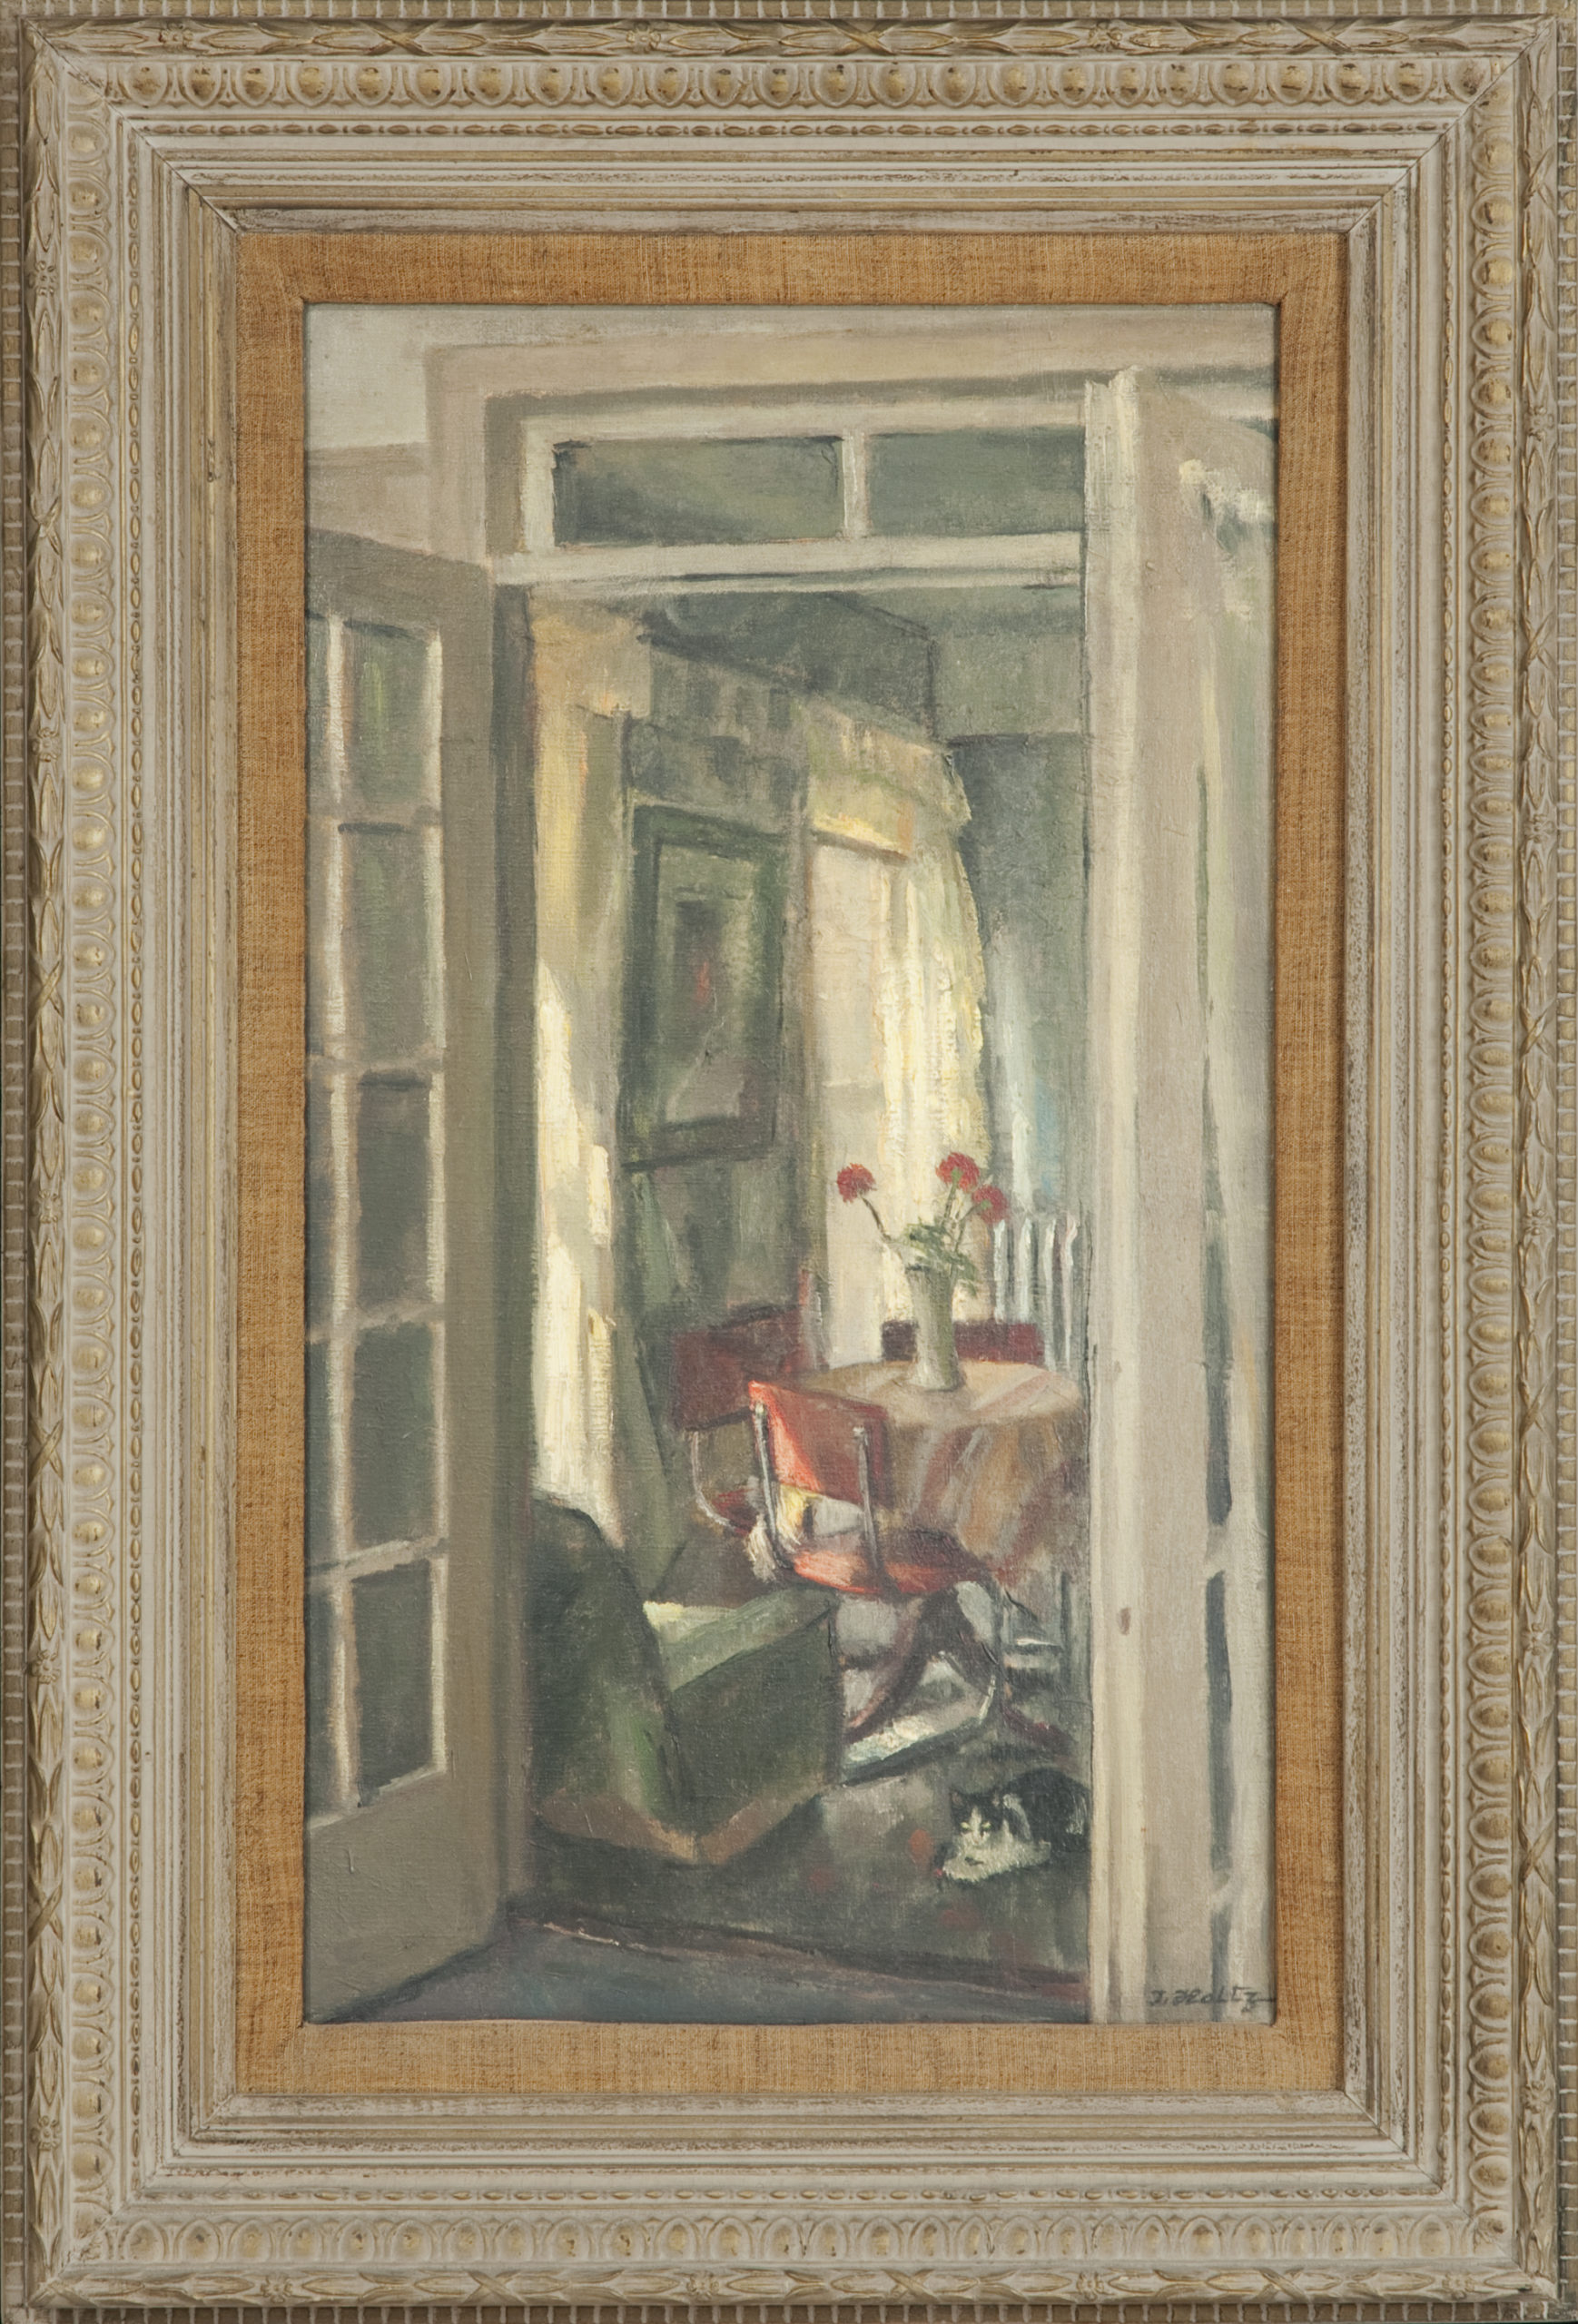 103 J Holtz New York 1958 - Oil on Canvas - 13 x 23 - Frame: 20.5 x 30.5 x 2